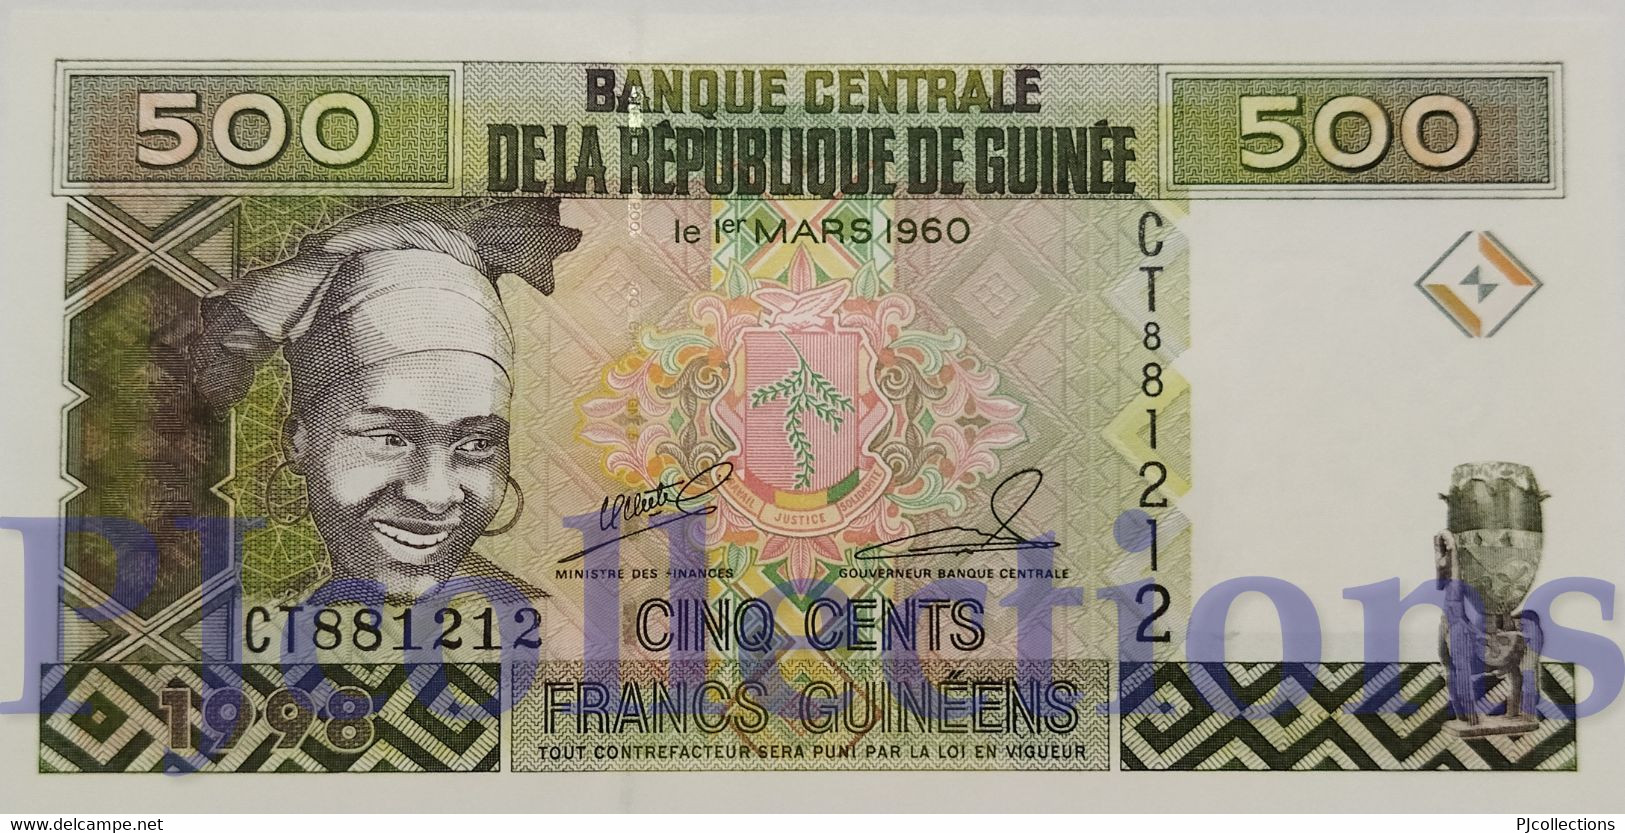 GUINEA 500 FRANCS 1998 PICK 36 UNC - Guinee